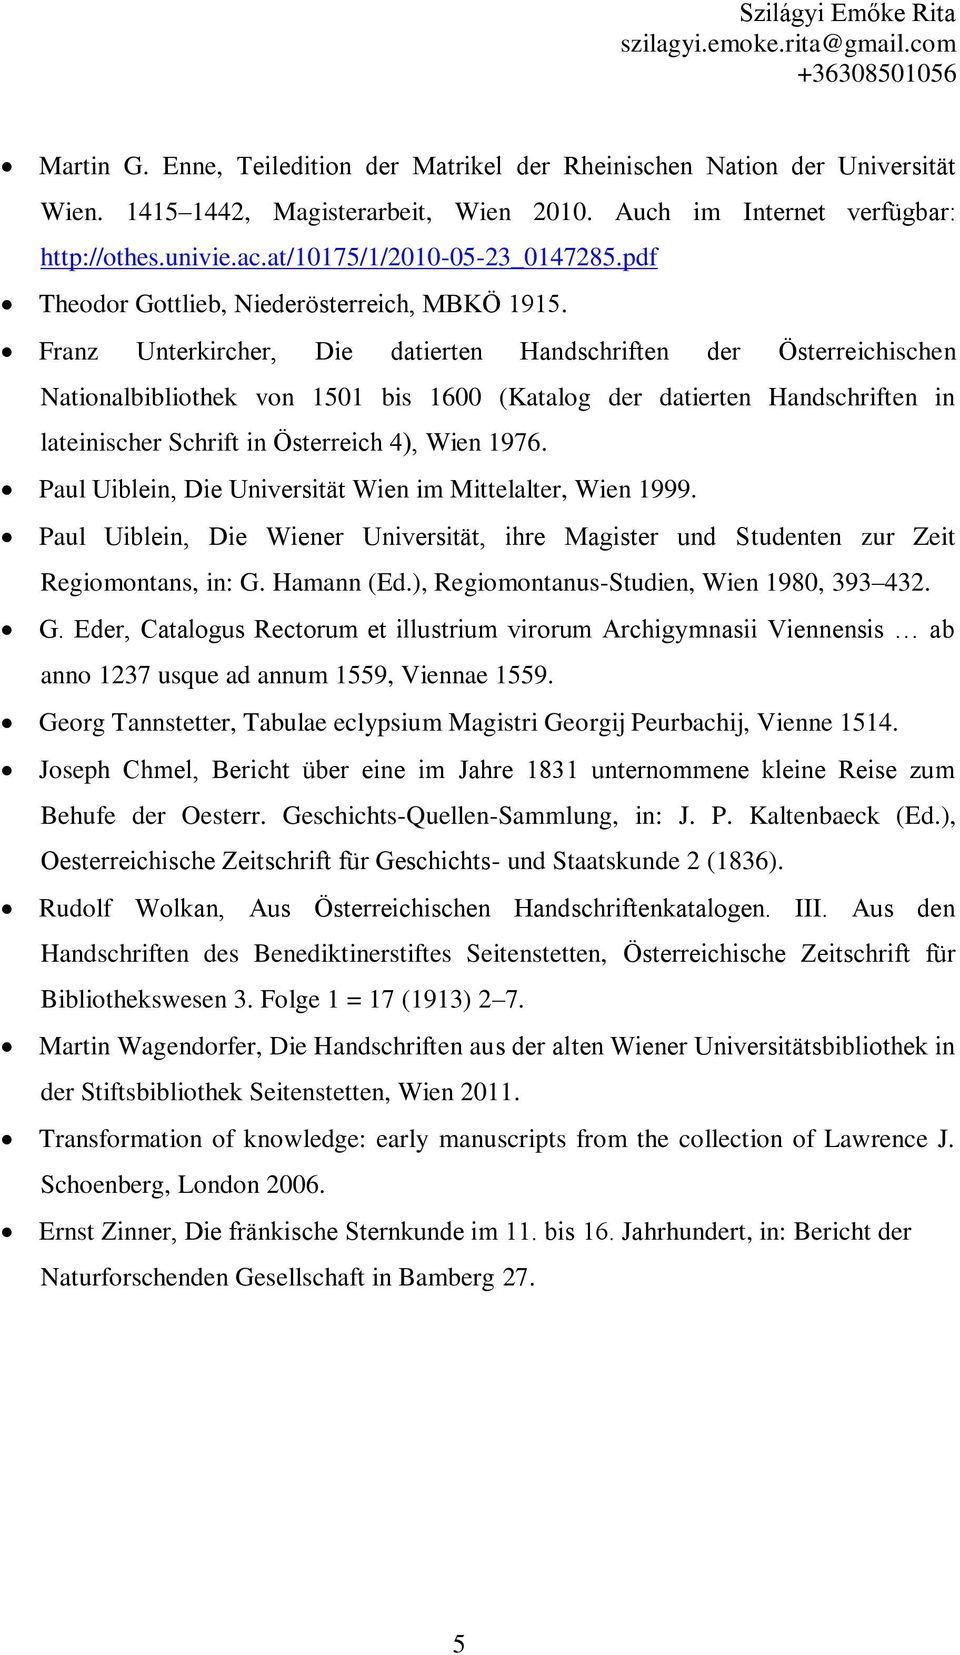 Franz Unterkircher, Die datierten Handschriften der Österreichischen Nationalbibliothek von 1501 bis 1600 (Katalog der datierten Handschriften in lateinischer Schrift in Österreich 4), Wien 1976.